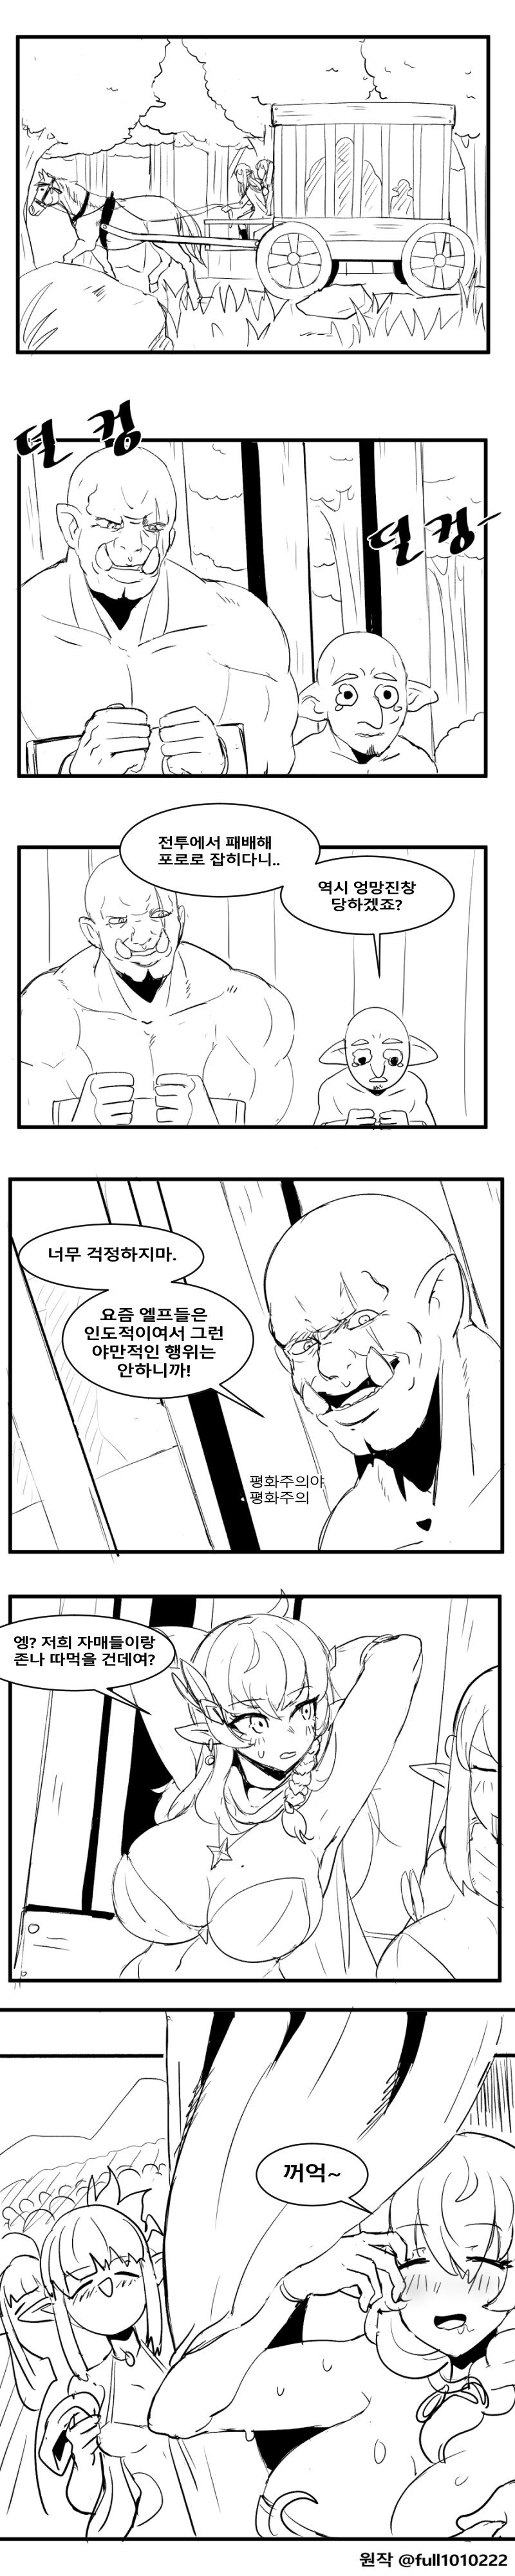 엘프의 포로로 잡힌 오크 만화.manhwa